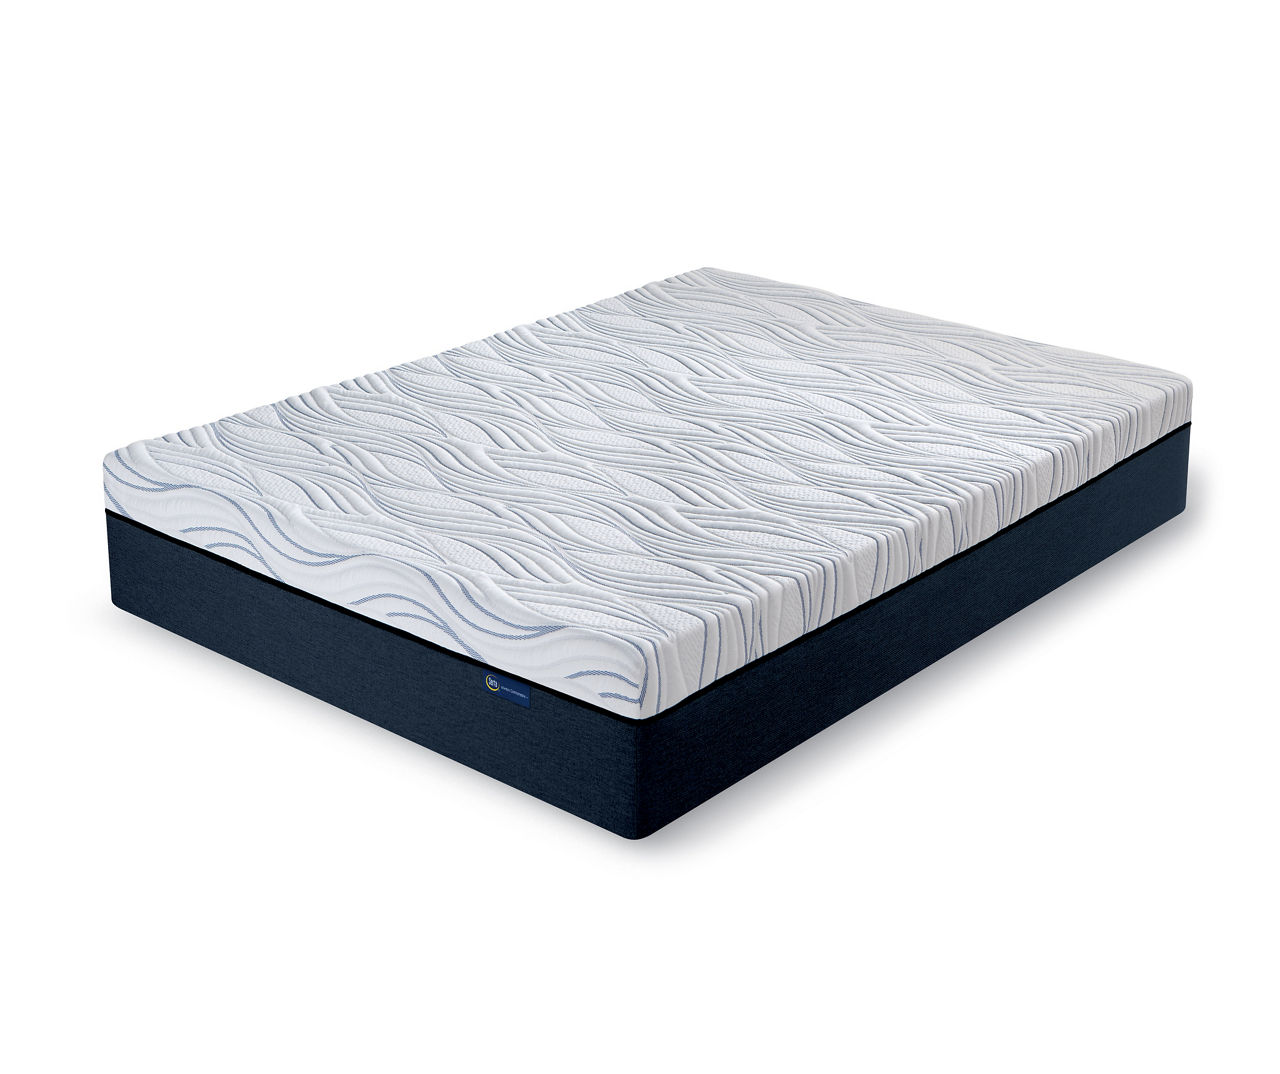 Perfect Sleeper 12" Queen Medium Firm Gel Memory Foam Mattress-In-A-Box